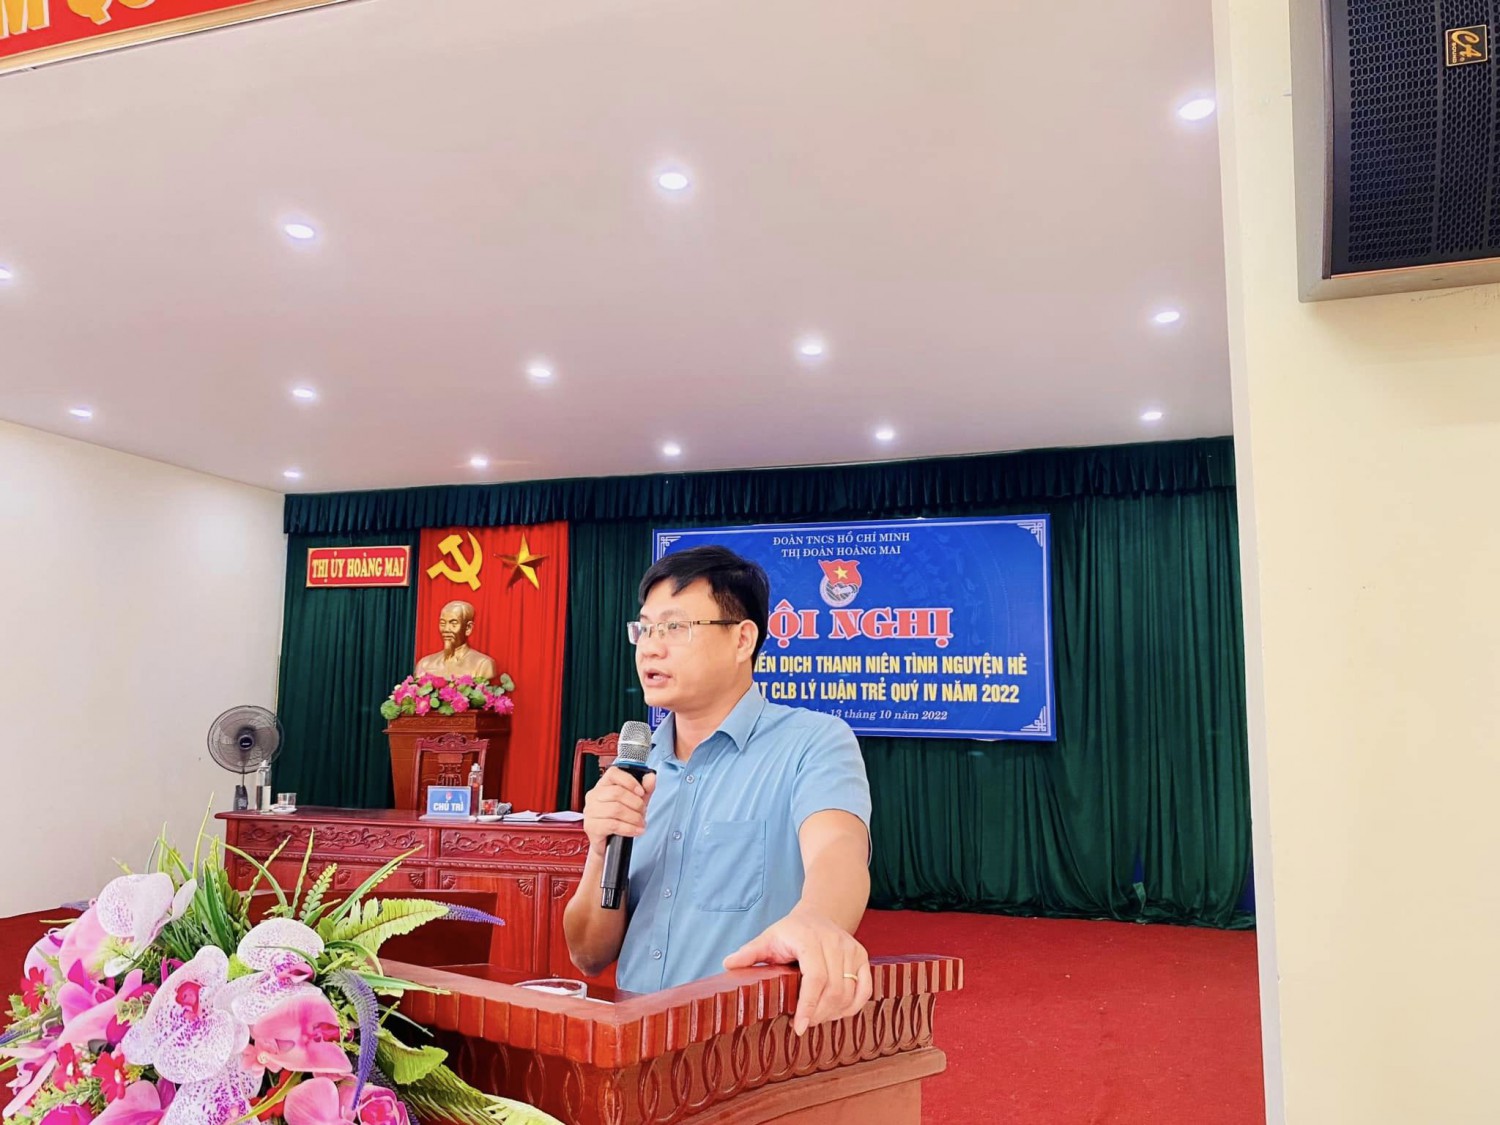 Đồng chí Đặng Văn Hoàng - Thị ủy viên, Phó Trường ban Tuyên Giáo thị ủy phát biểu tại hội nghị